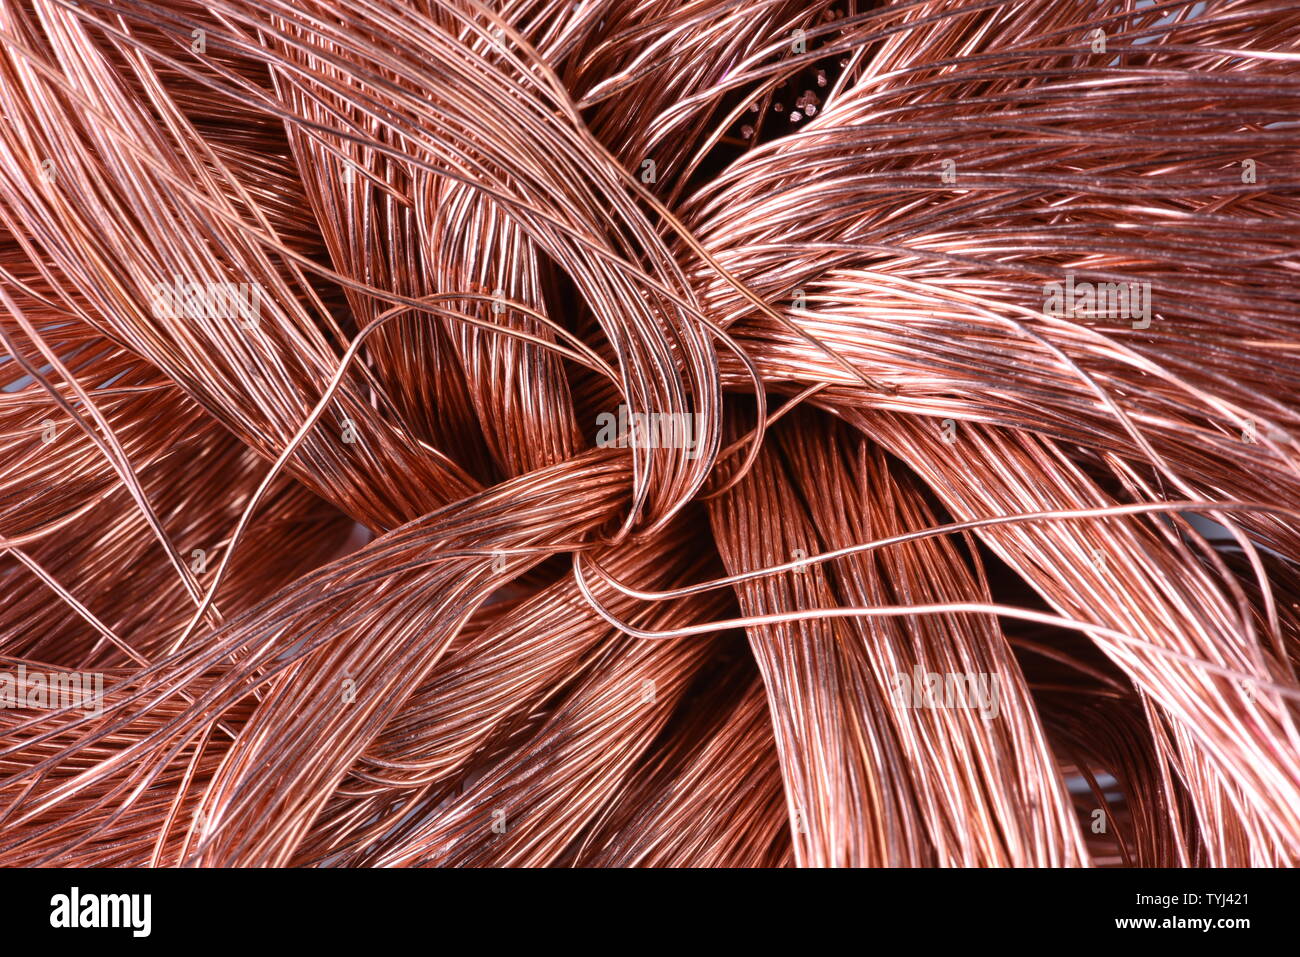 Non-ferrous industrial raw materials, copper wire Stock Photo